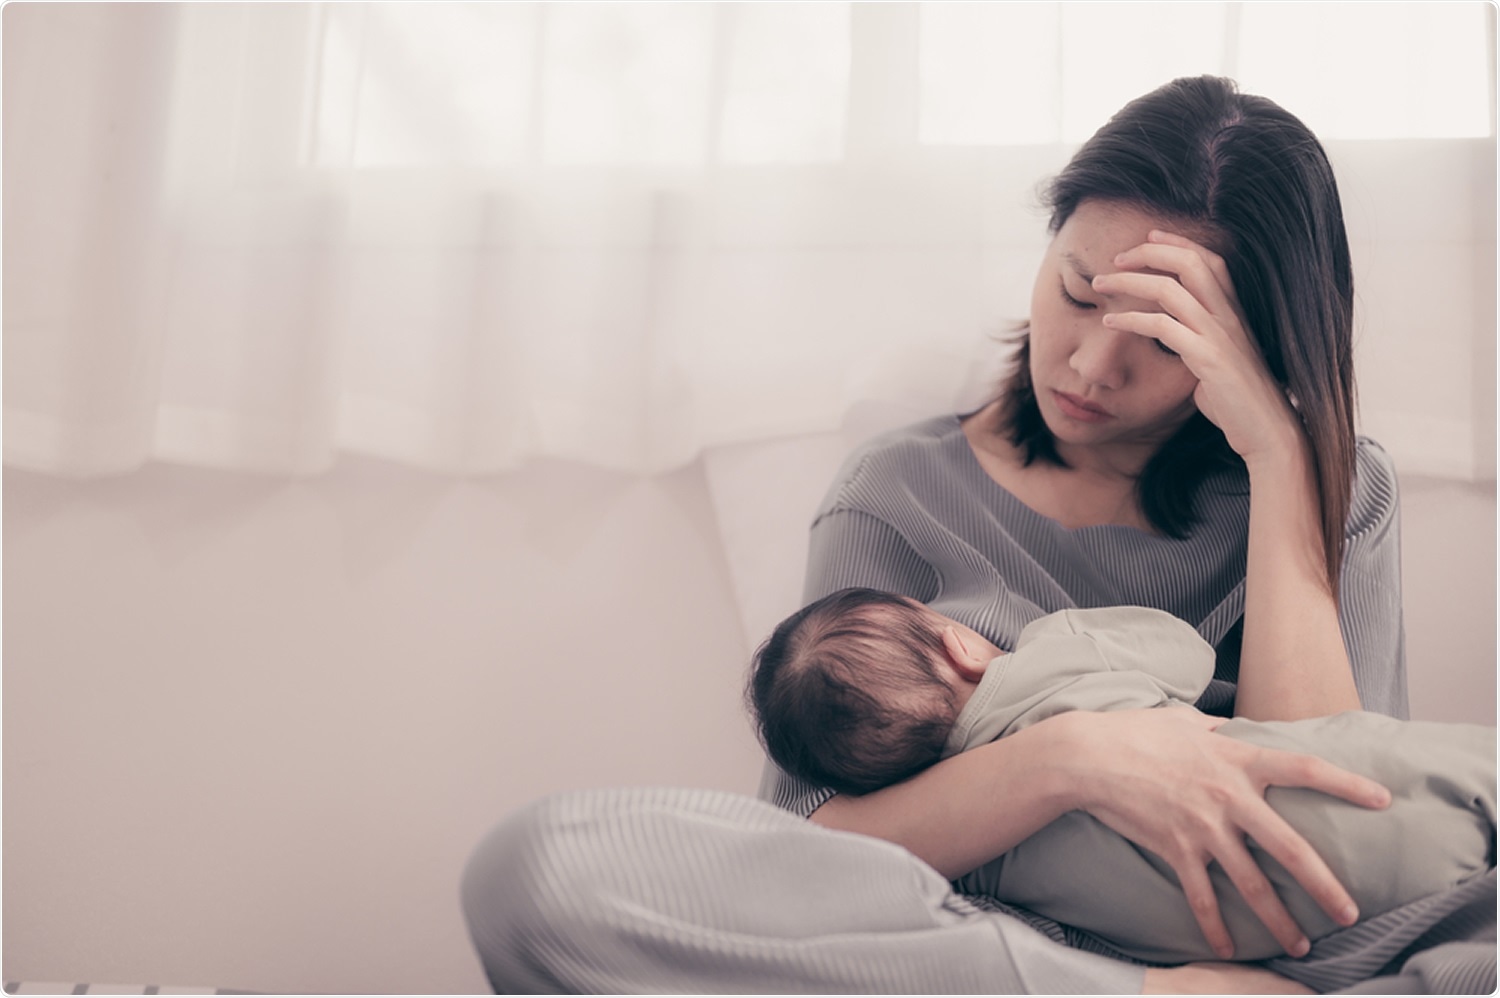 Estudo: O efeito de limitações sociais, perda de apoio social, e perda de autonomia materna na depressão após o parto em 1 a 12 meses de mulheres após o parto durante a pandemia COVID-19. Crédito de imagem: GrooveZ/Shutterstock